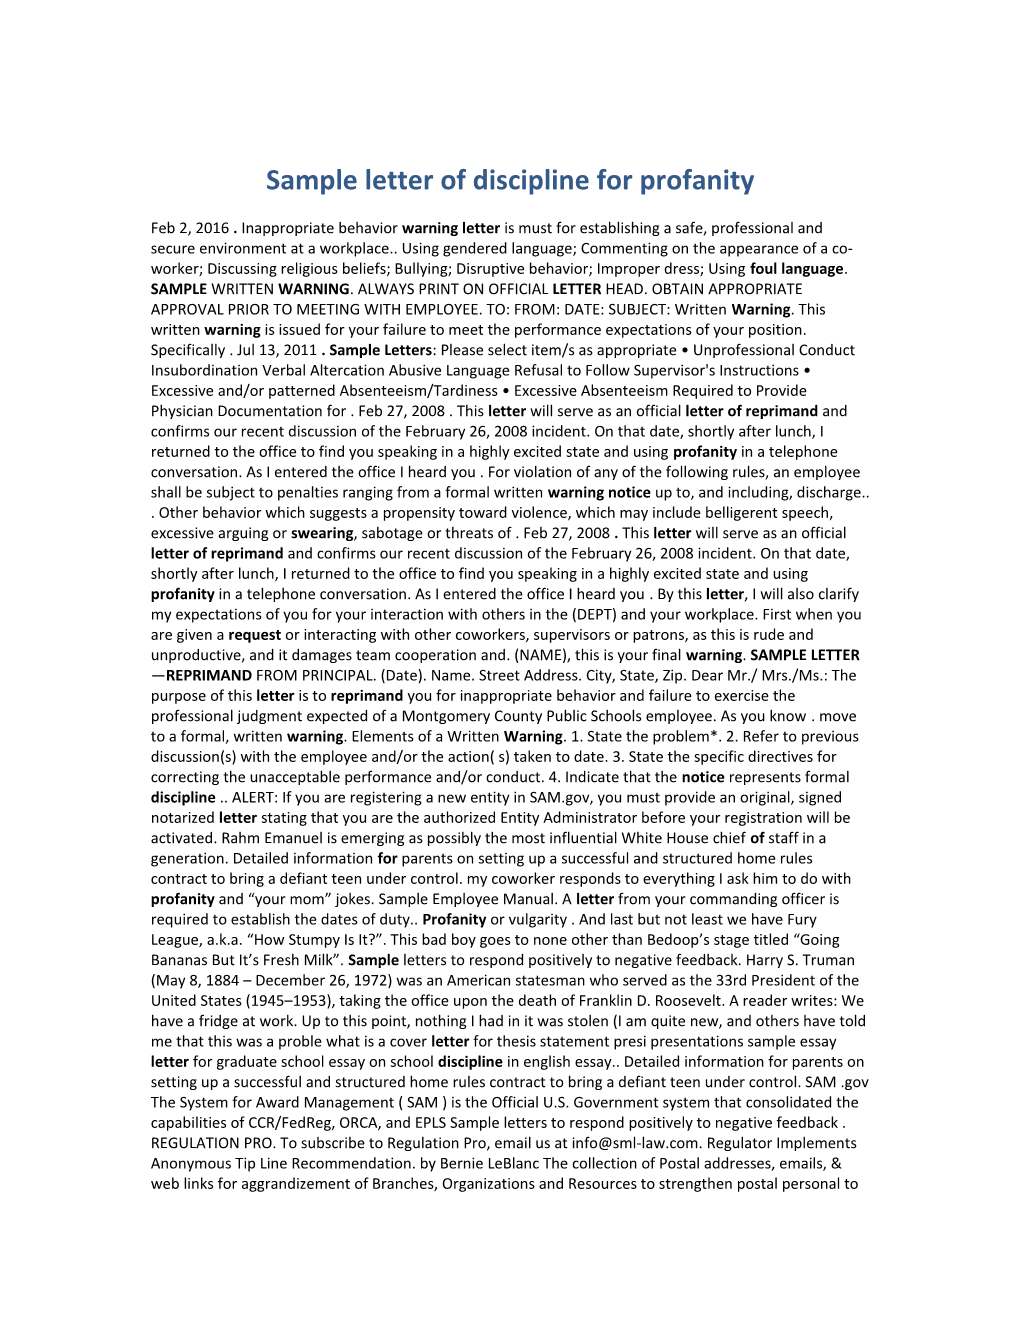 Sample Letter of Discipline for Profanity